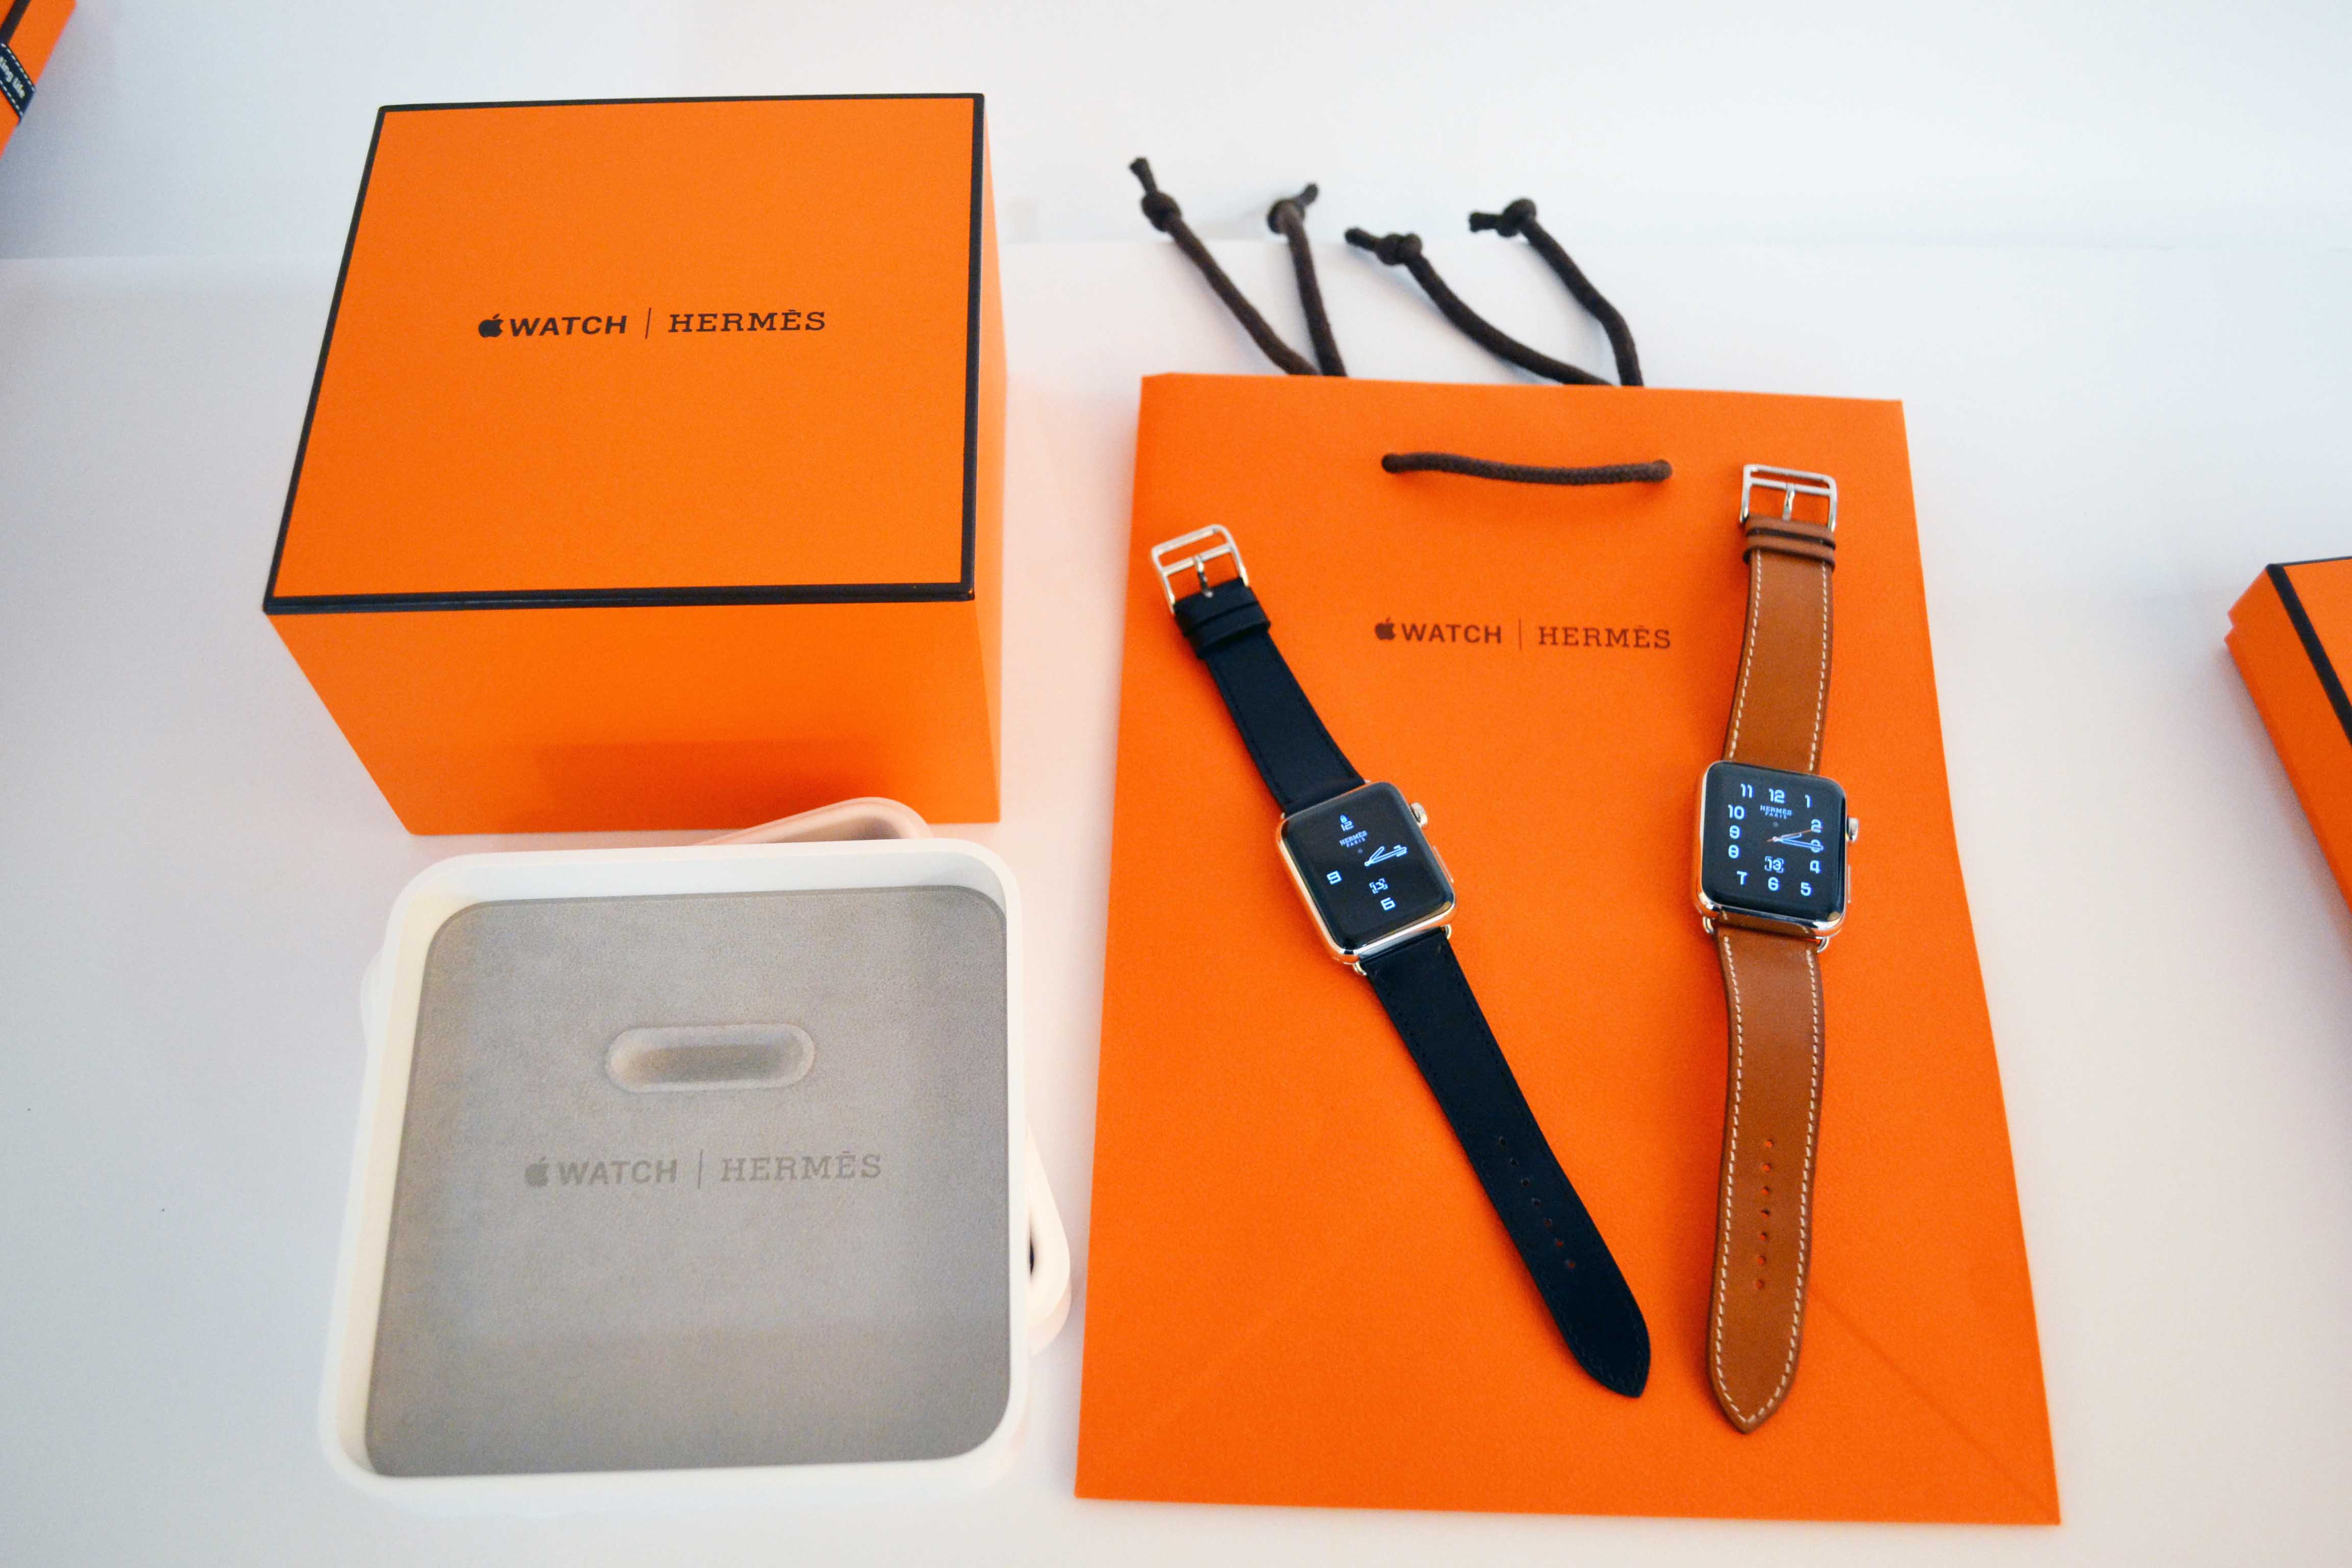 Apple Watch Hermès Packaging